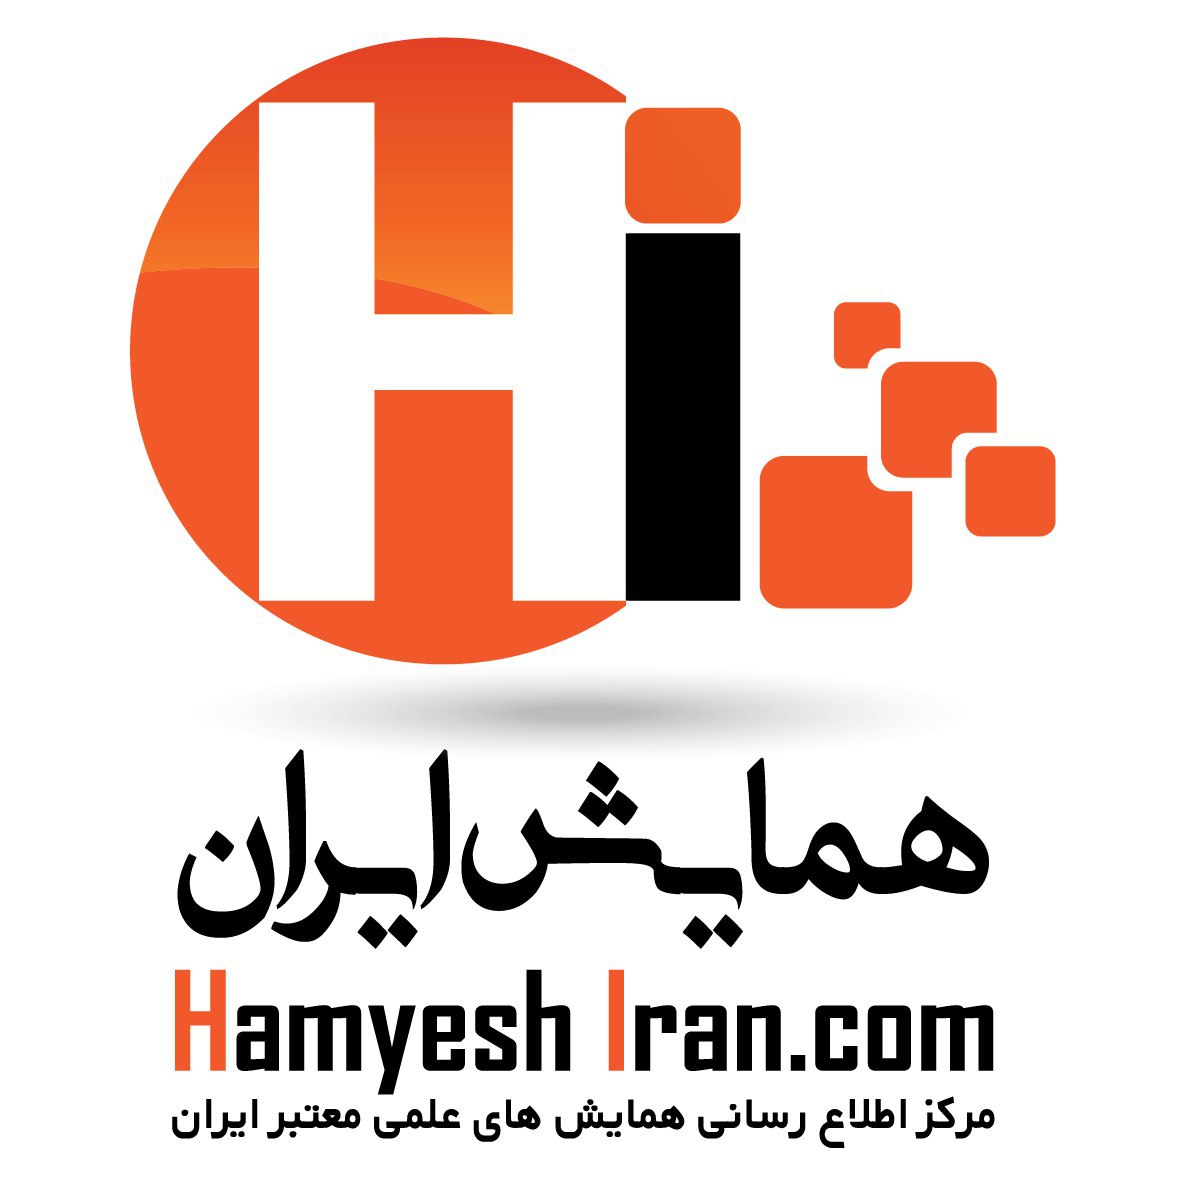 مرکز اطلاع رسانی همایش های علمی معتبر ایران